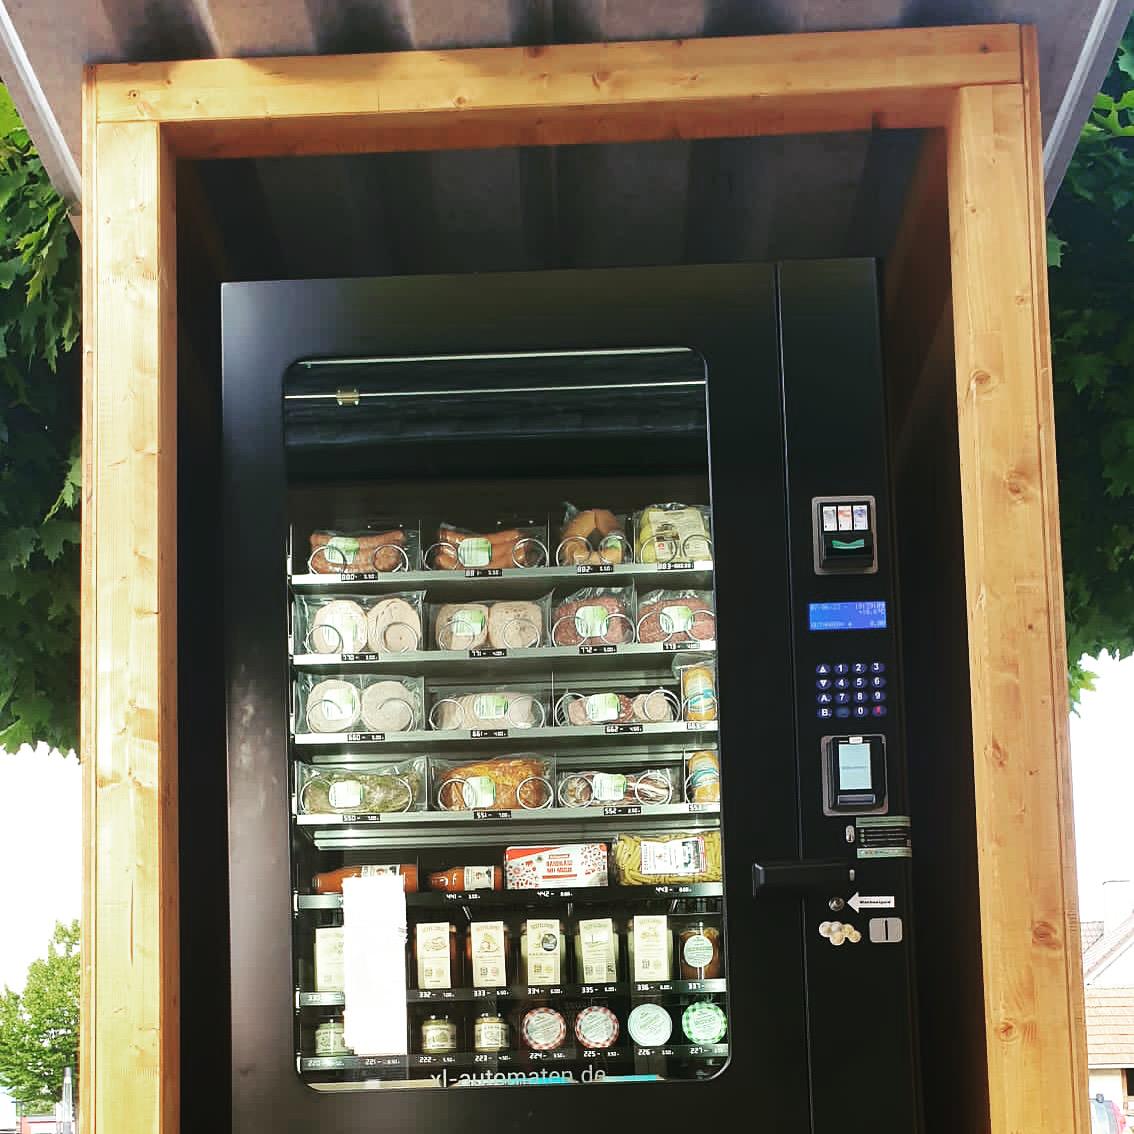 Restaurant "Lebensmittelautomat am Kiosk" in Lahnau